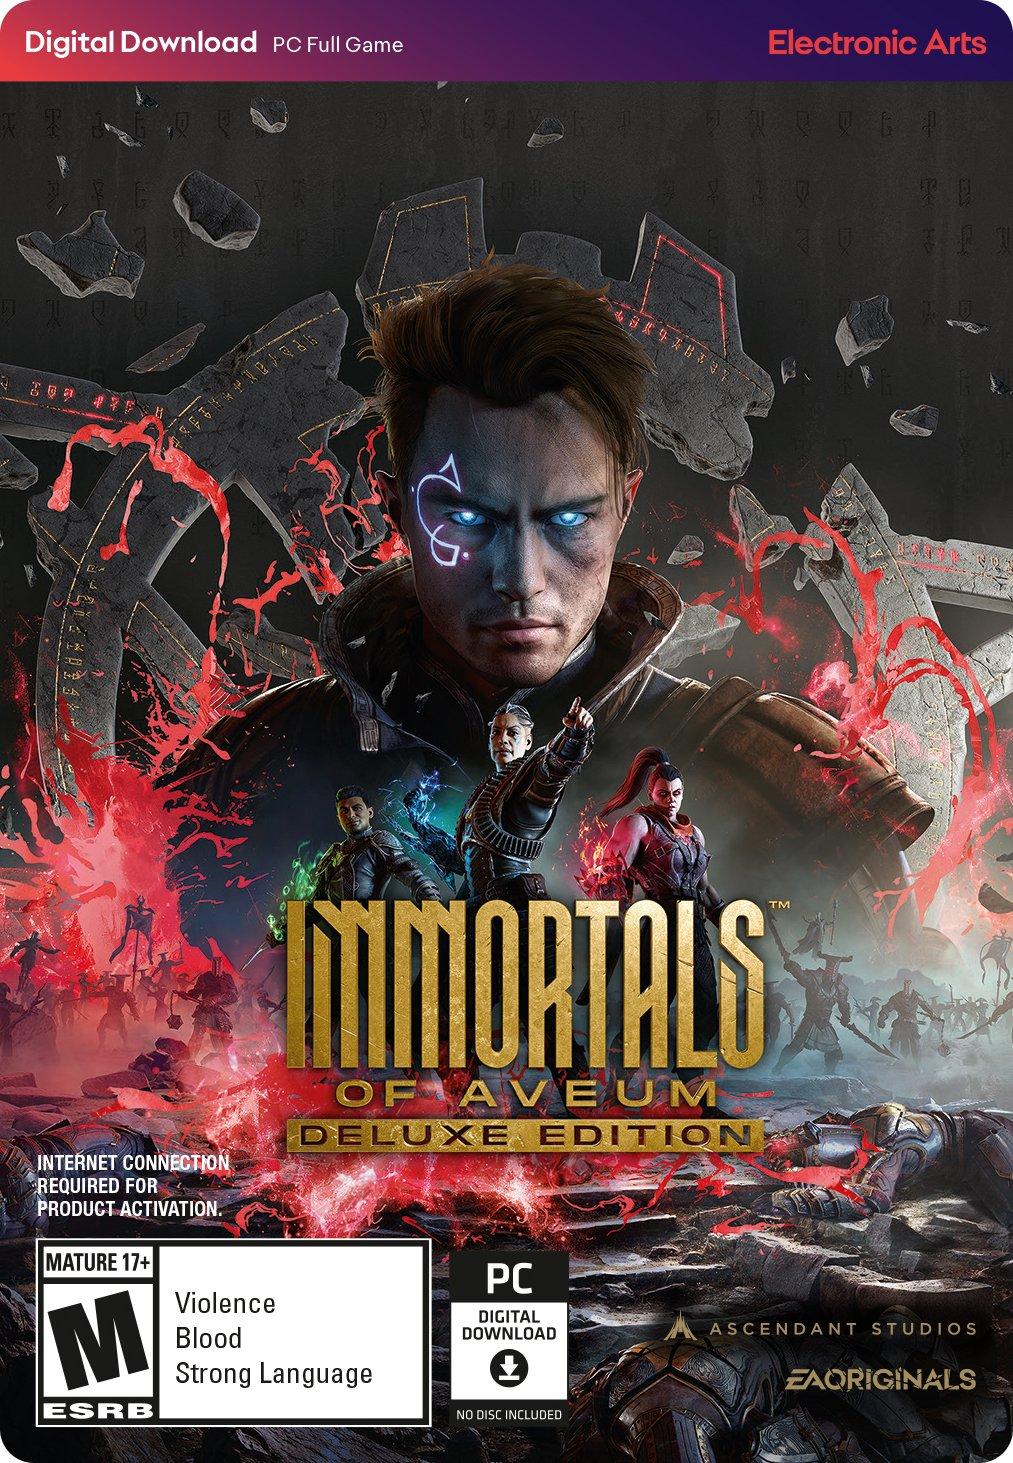 Immortals of app | PC Aveum Edition GameStop EA - Deluxe